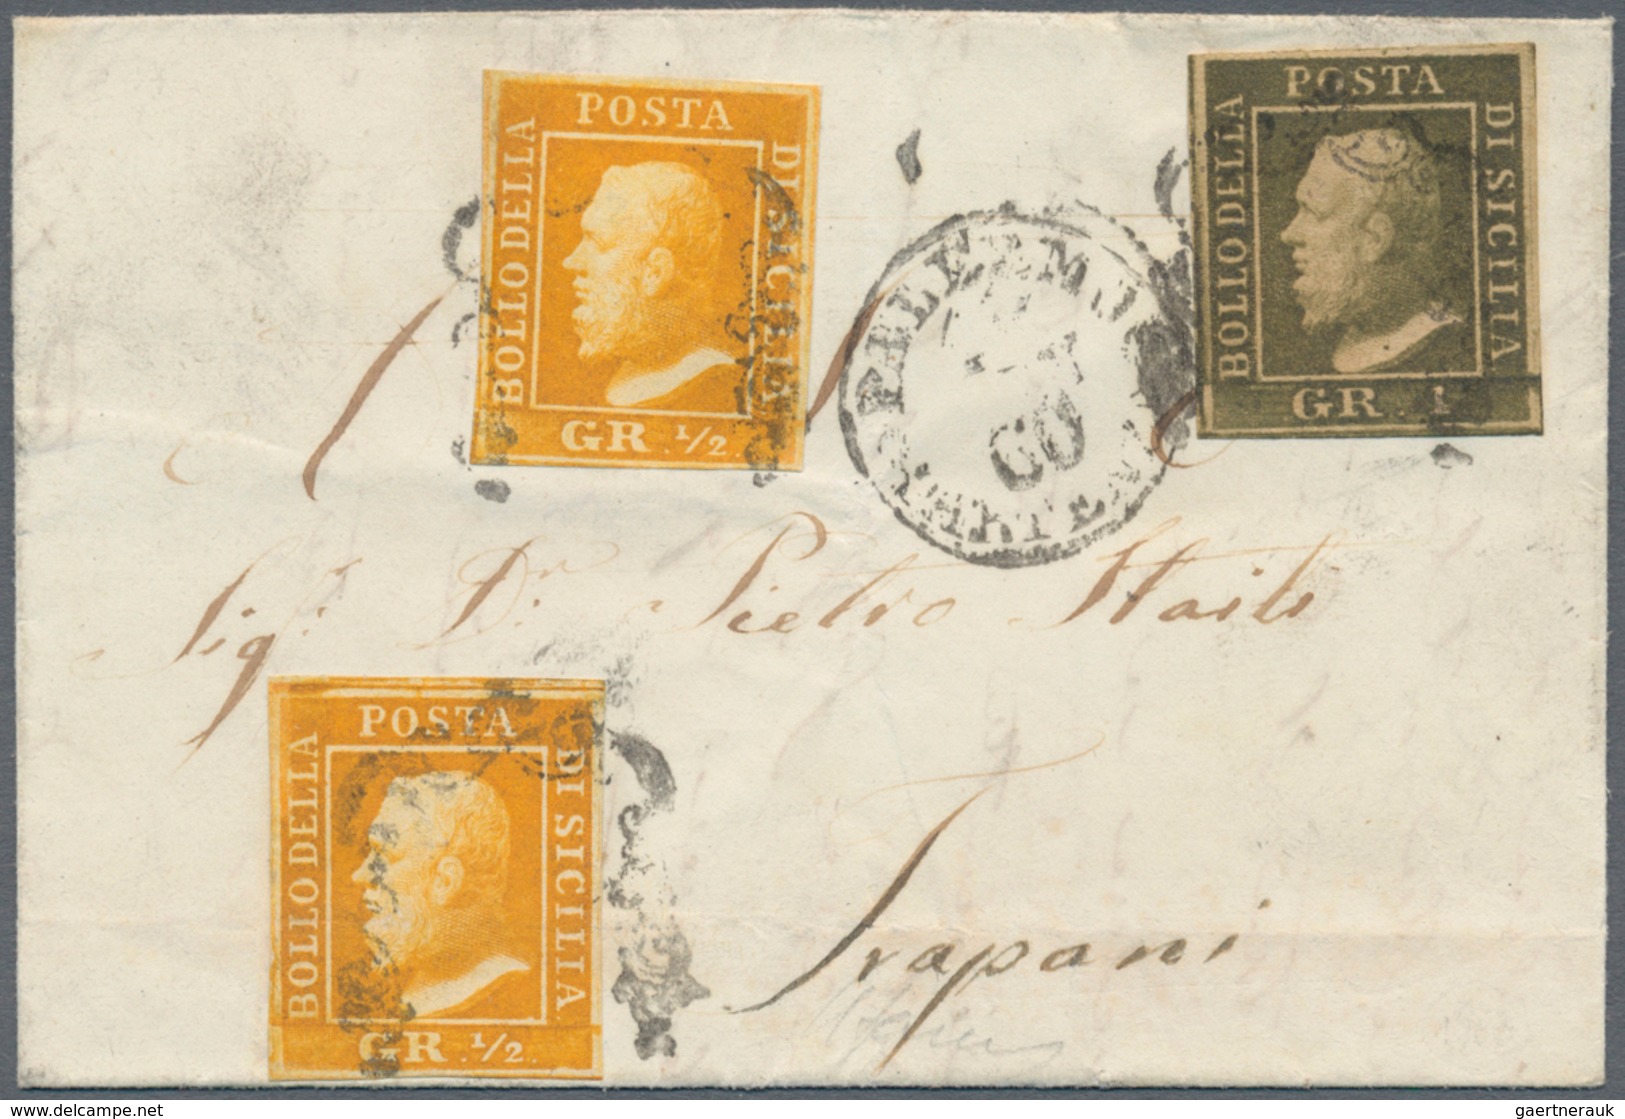 00865 Italien - Altitalienische Staaten: Sizilien: 1859, 1/2 Grano, Second Plate, Orange, Palermo Paper, T - Sicilia